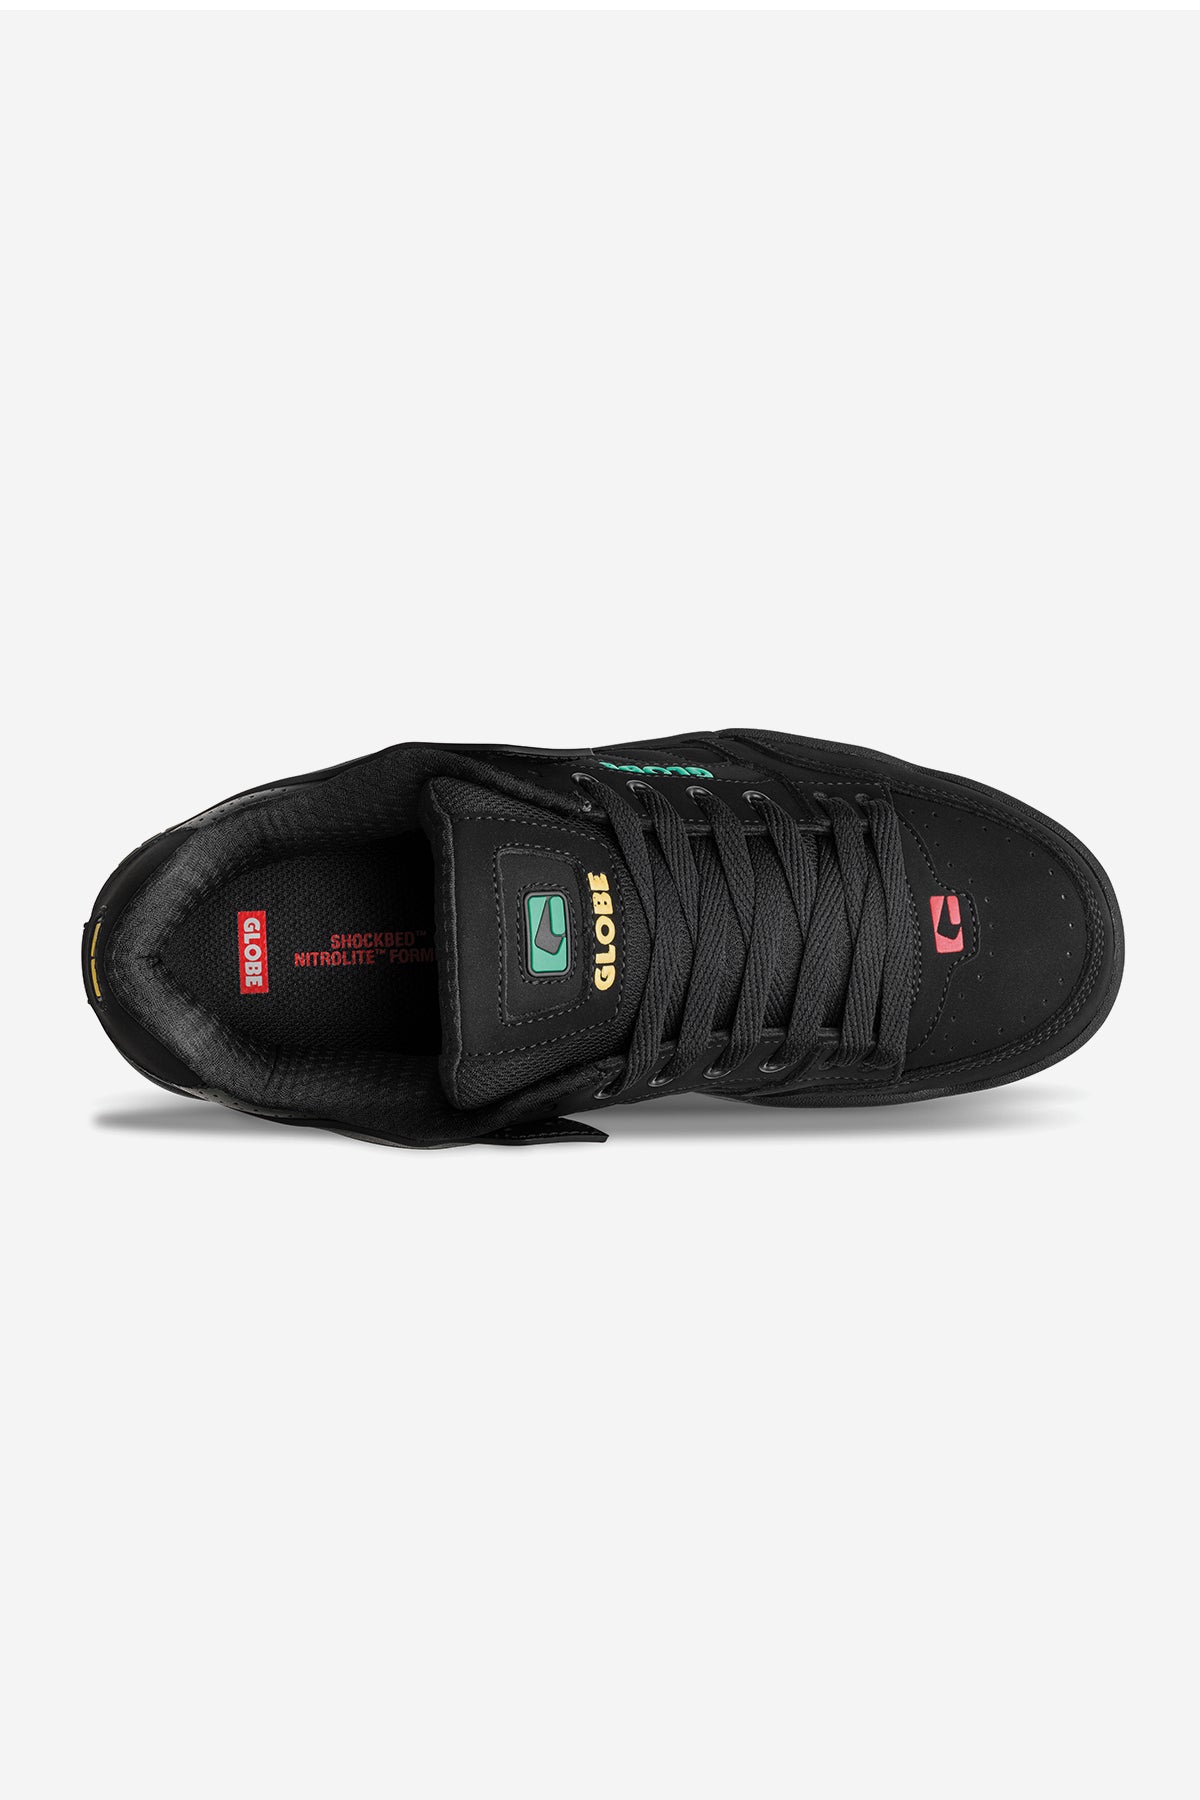 Globe Shoes - Tilt in colour Black Rasta top